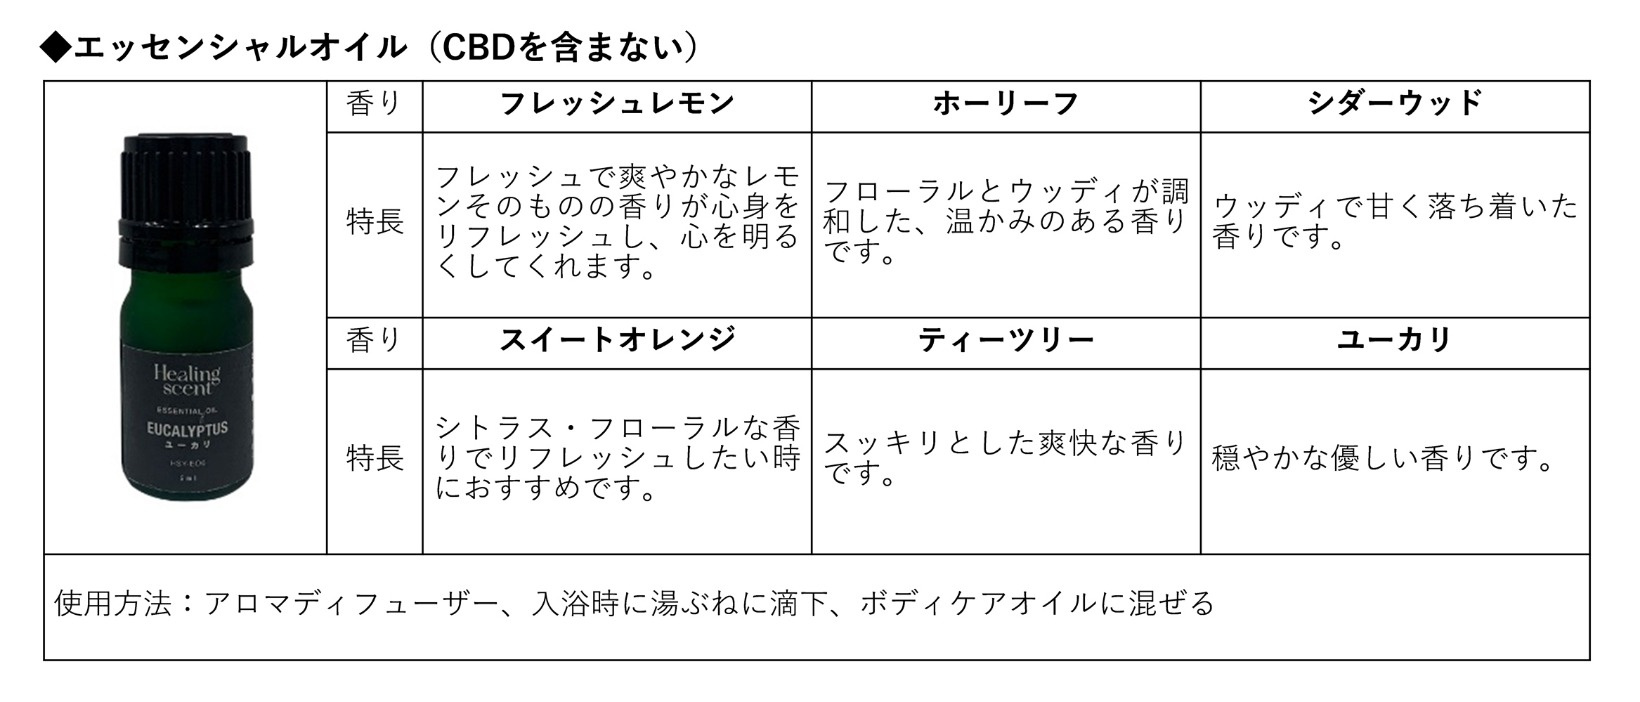 【バラ売りOK】ヒーリングセントCBDエッセンシャルオイル 6種